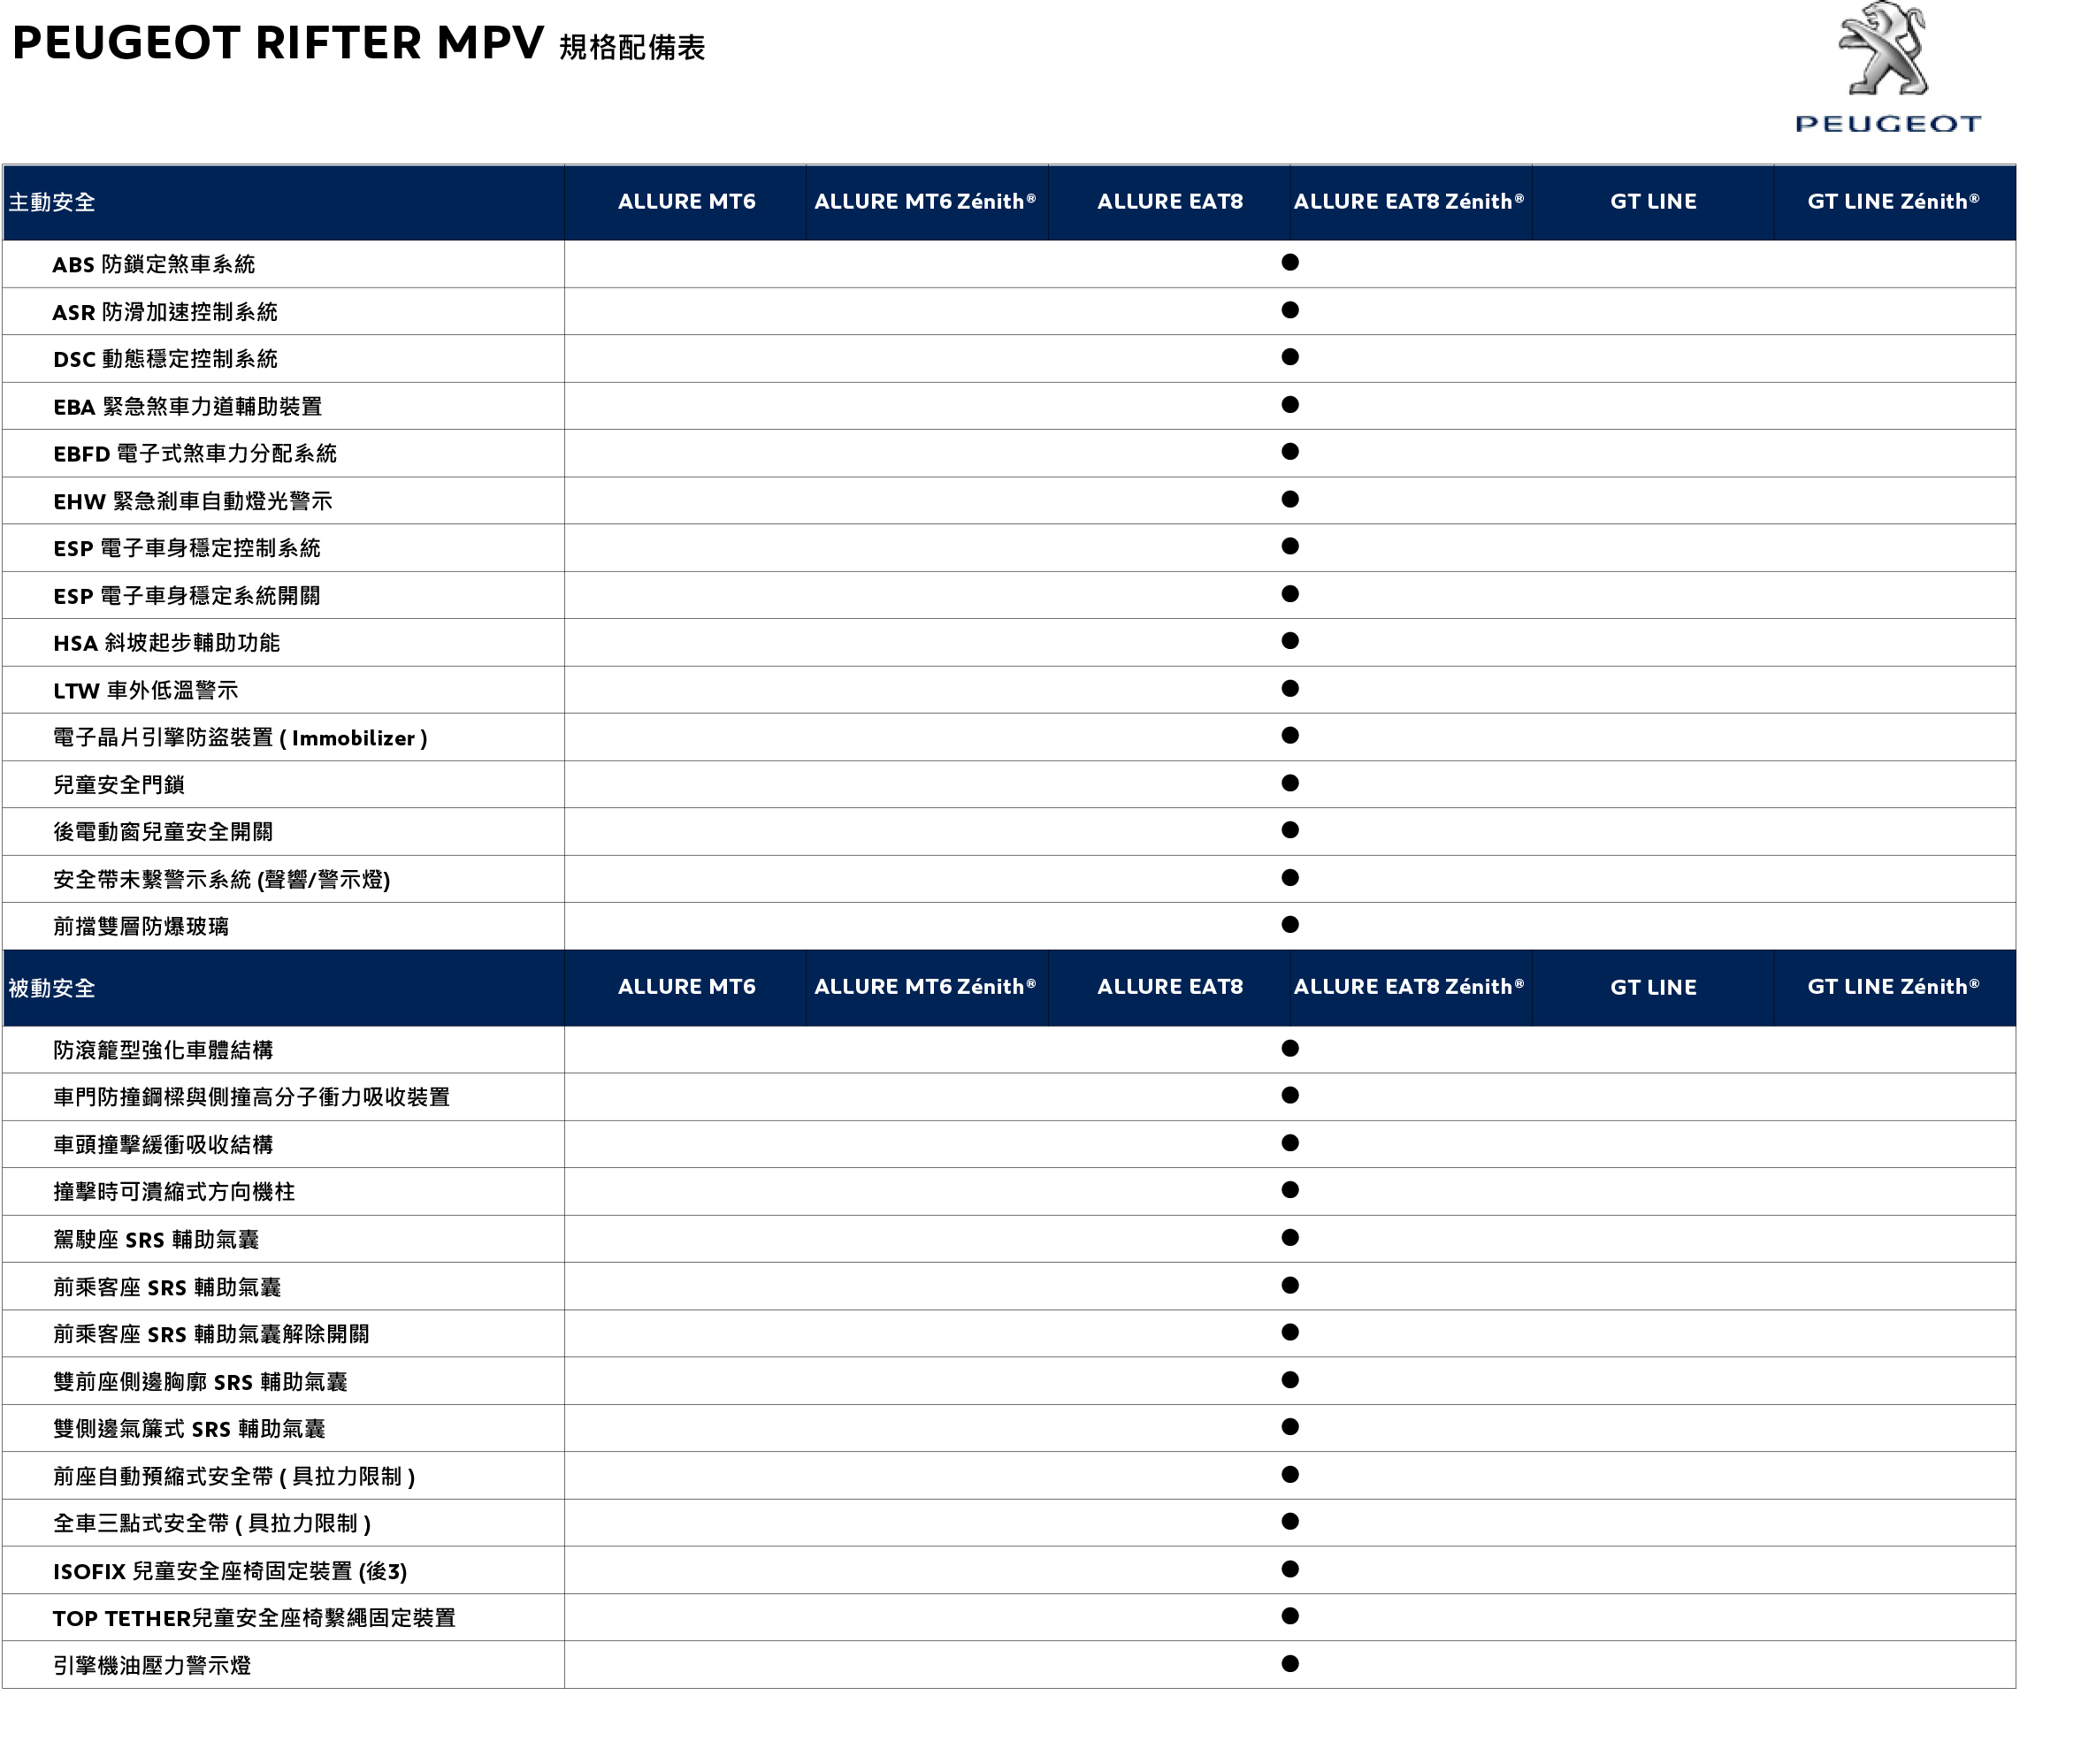 PEUGEOT RIFTER MPV 規格配備表_20191021-3